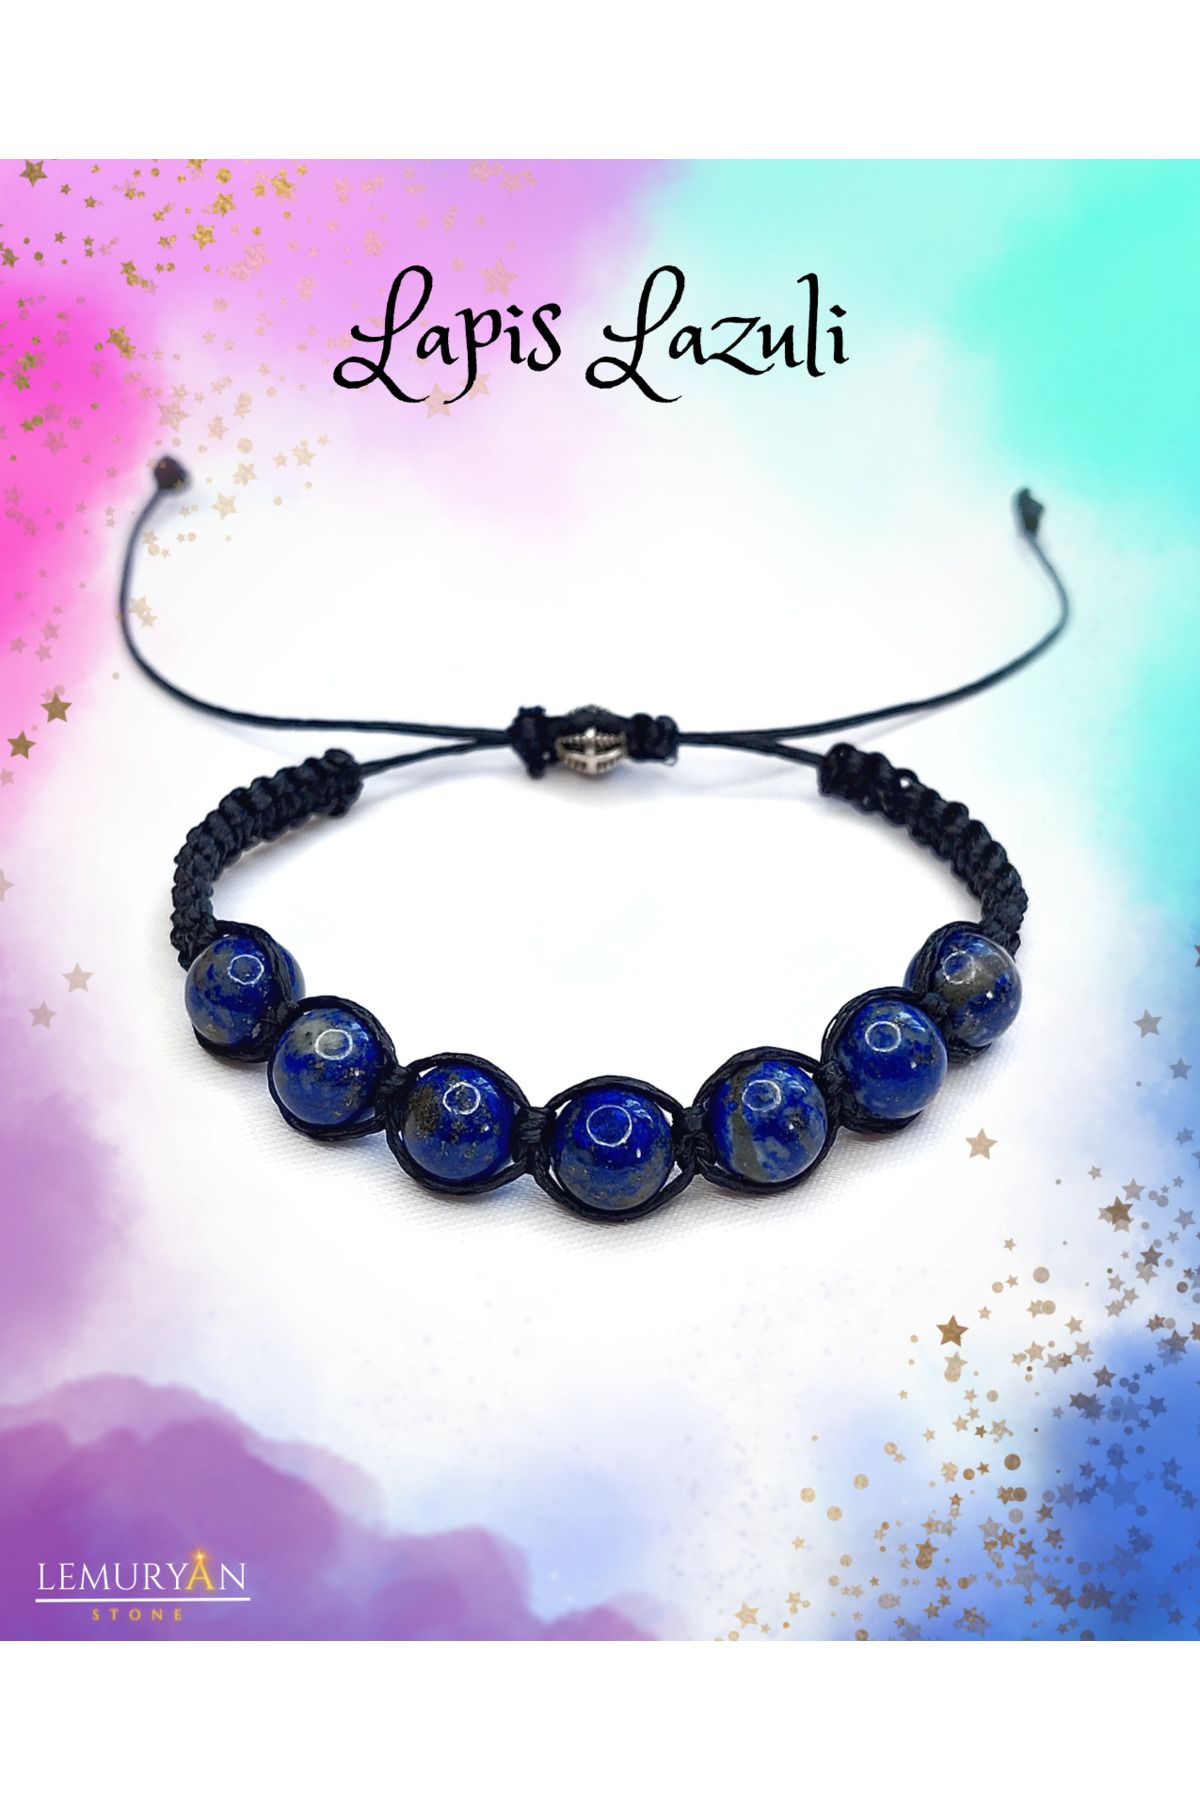 Zümrüdüanka Stone Orijinal Lapis Lazuli Makrome Örgülü Doğaltaş Unisex Bileklik